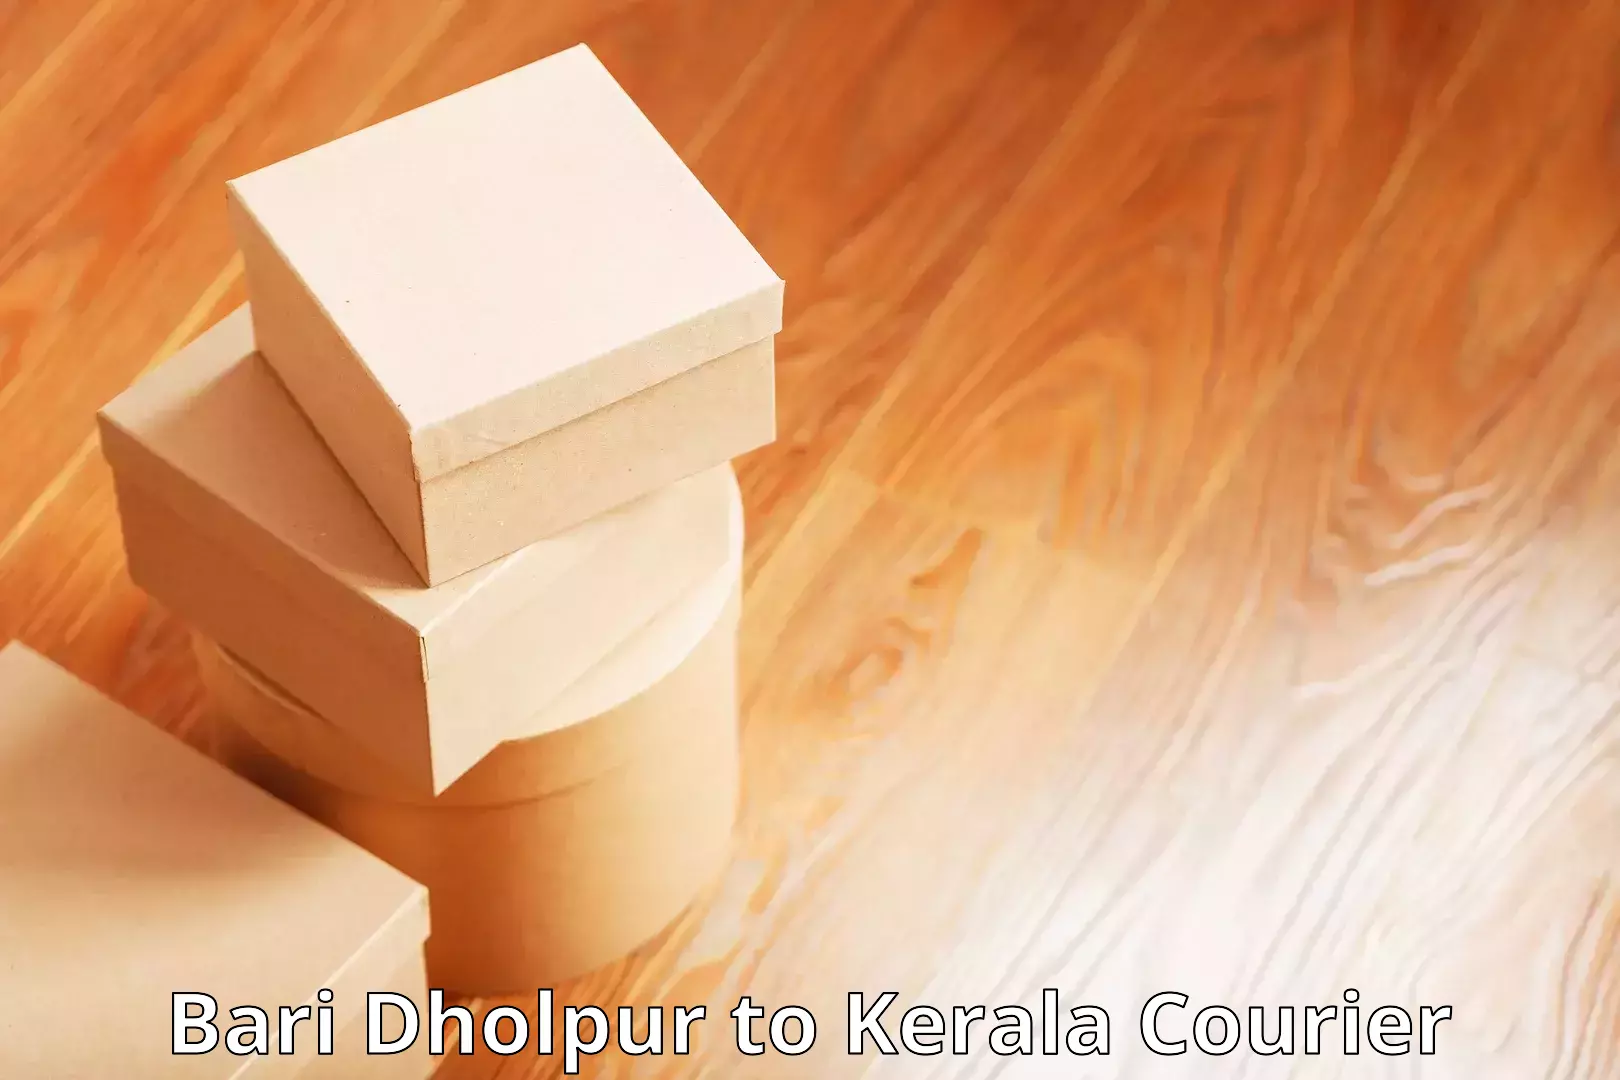 Budget-friendly shipping Bari Dholpur to Kerala